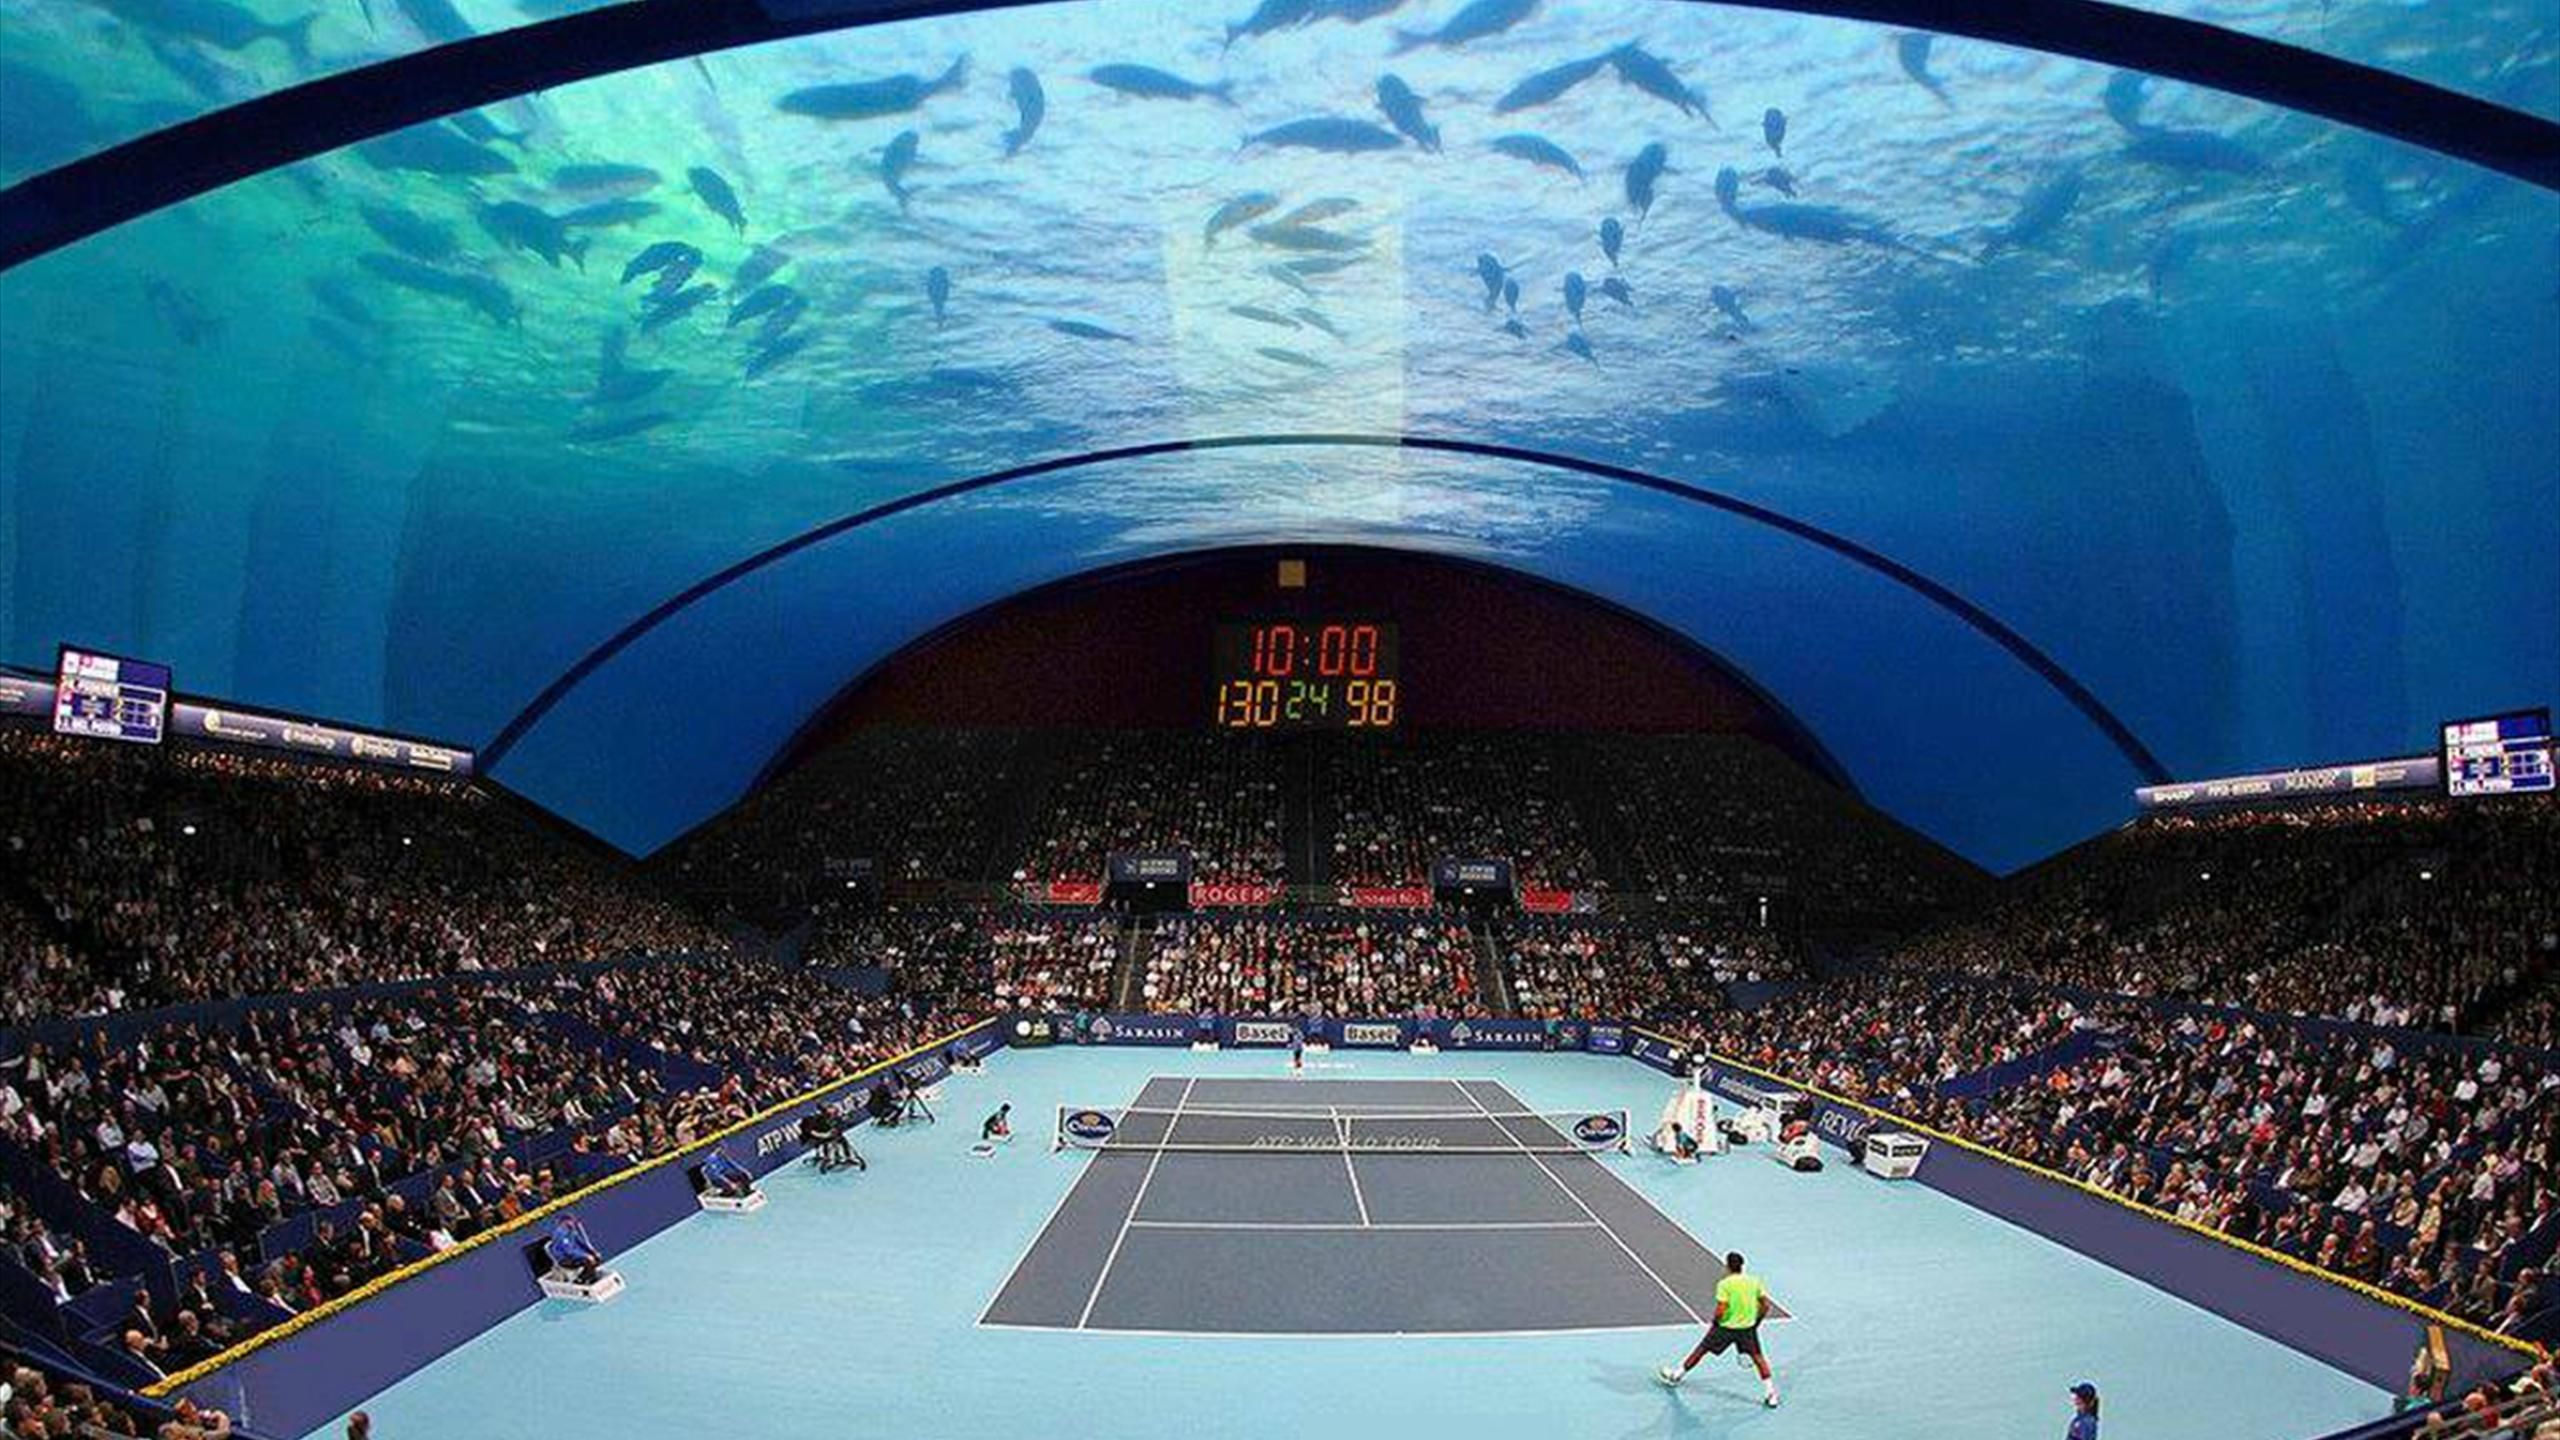 Irre Tennis unter Wasser Dubai? - Eurosport